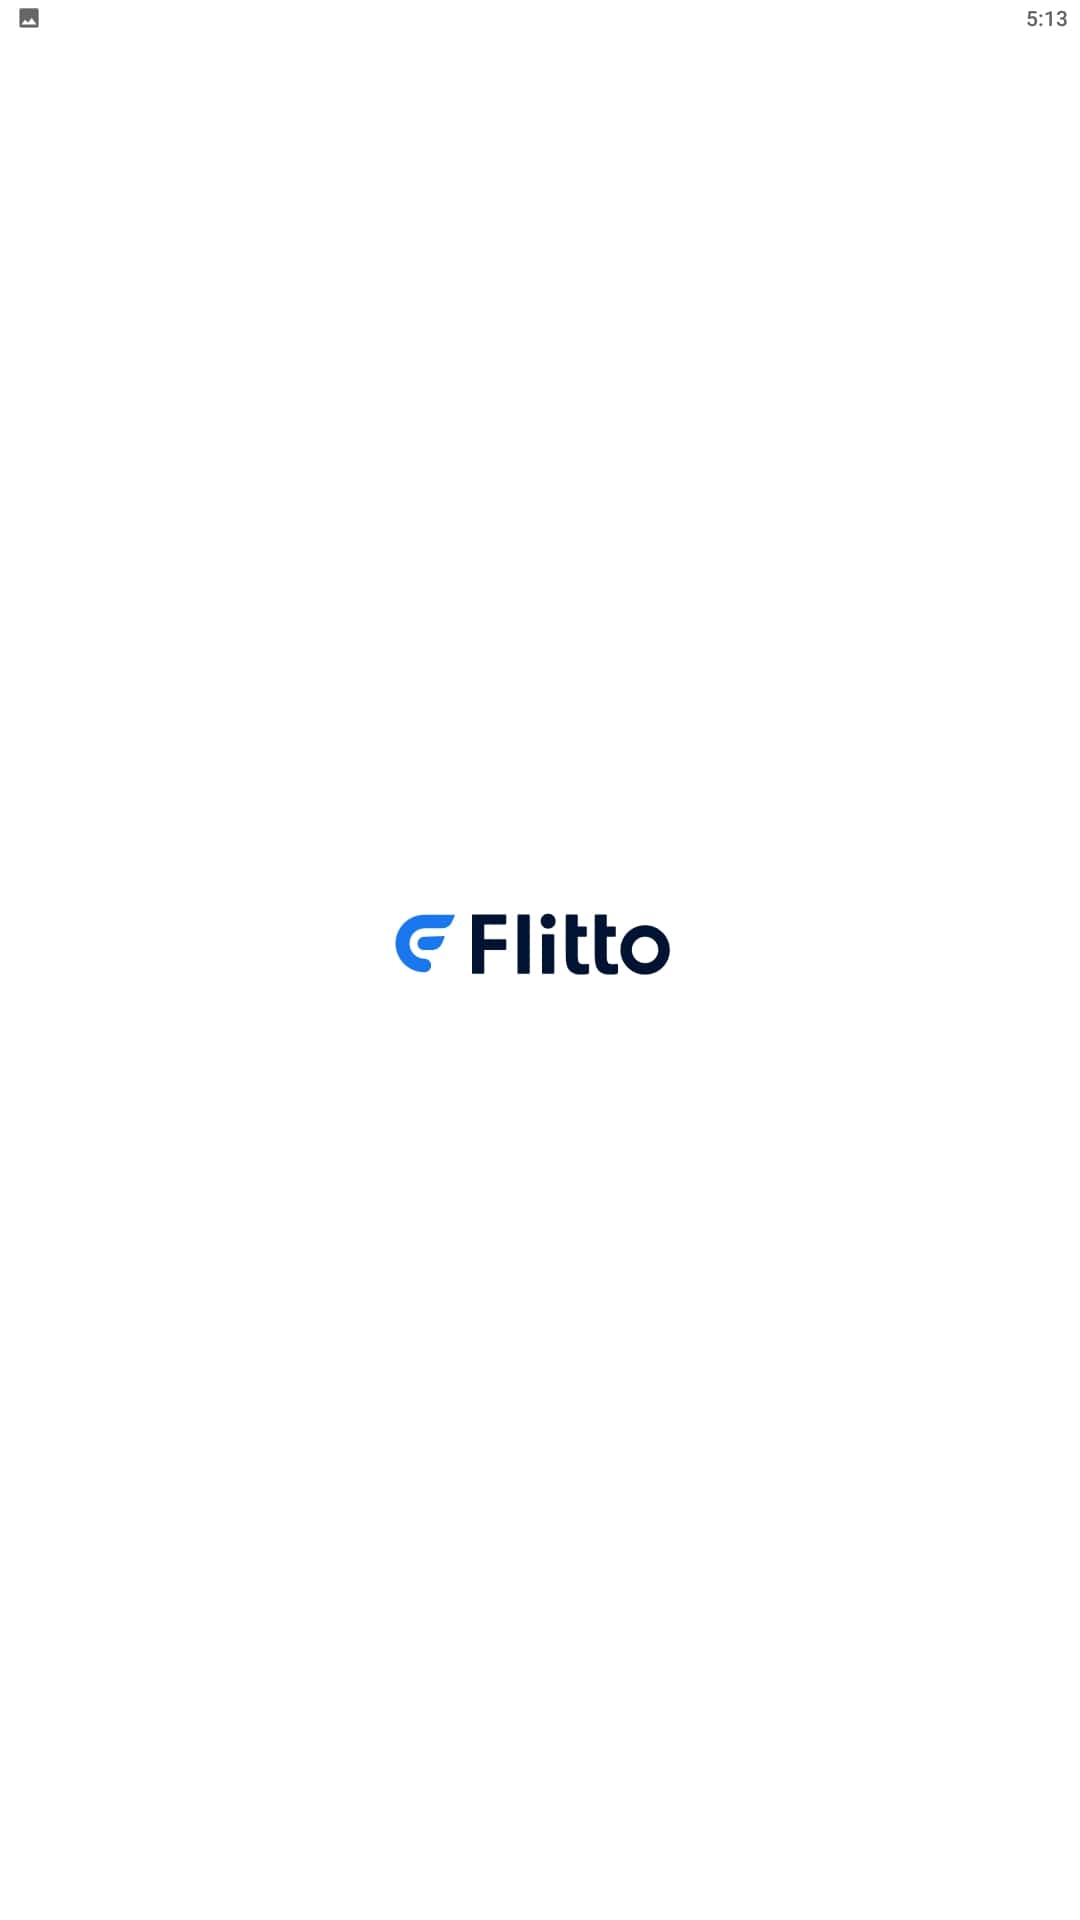 Flitto翻译通免费下载app_Flitto翻译通最新手机版安装_下载Flitto翻译通最新应用v23.3.28